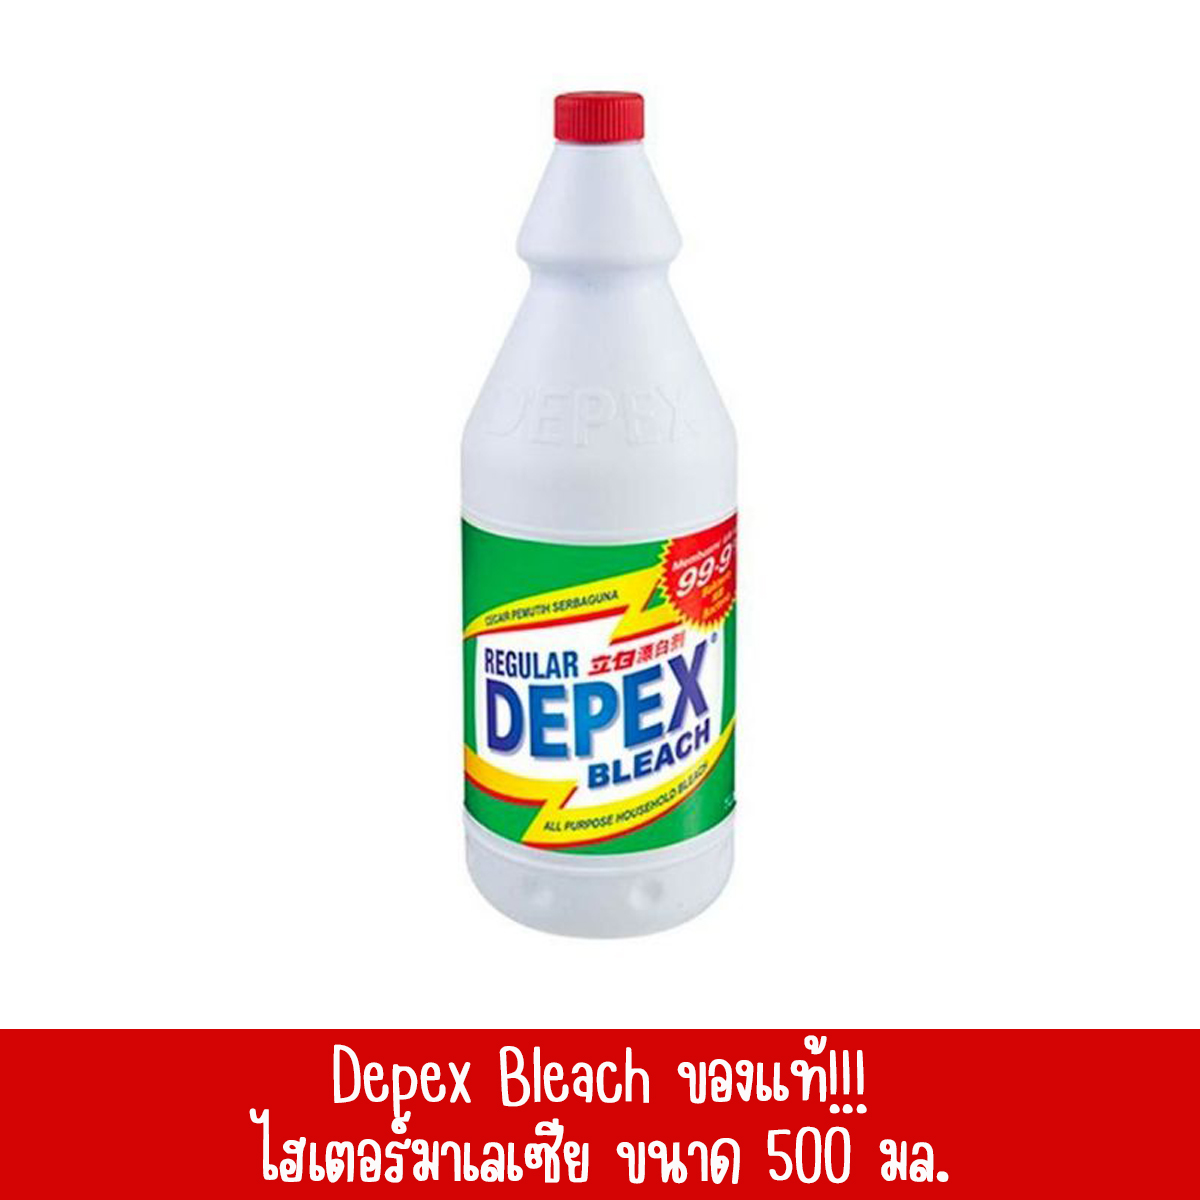 DEPEX น้ำยาฟอกผ้าขาวมาเลย์ ขนาด 500 มล. ของแท้ 100%  จำนวน 1 ขวด